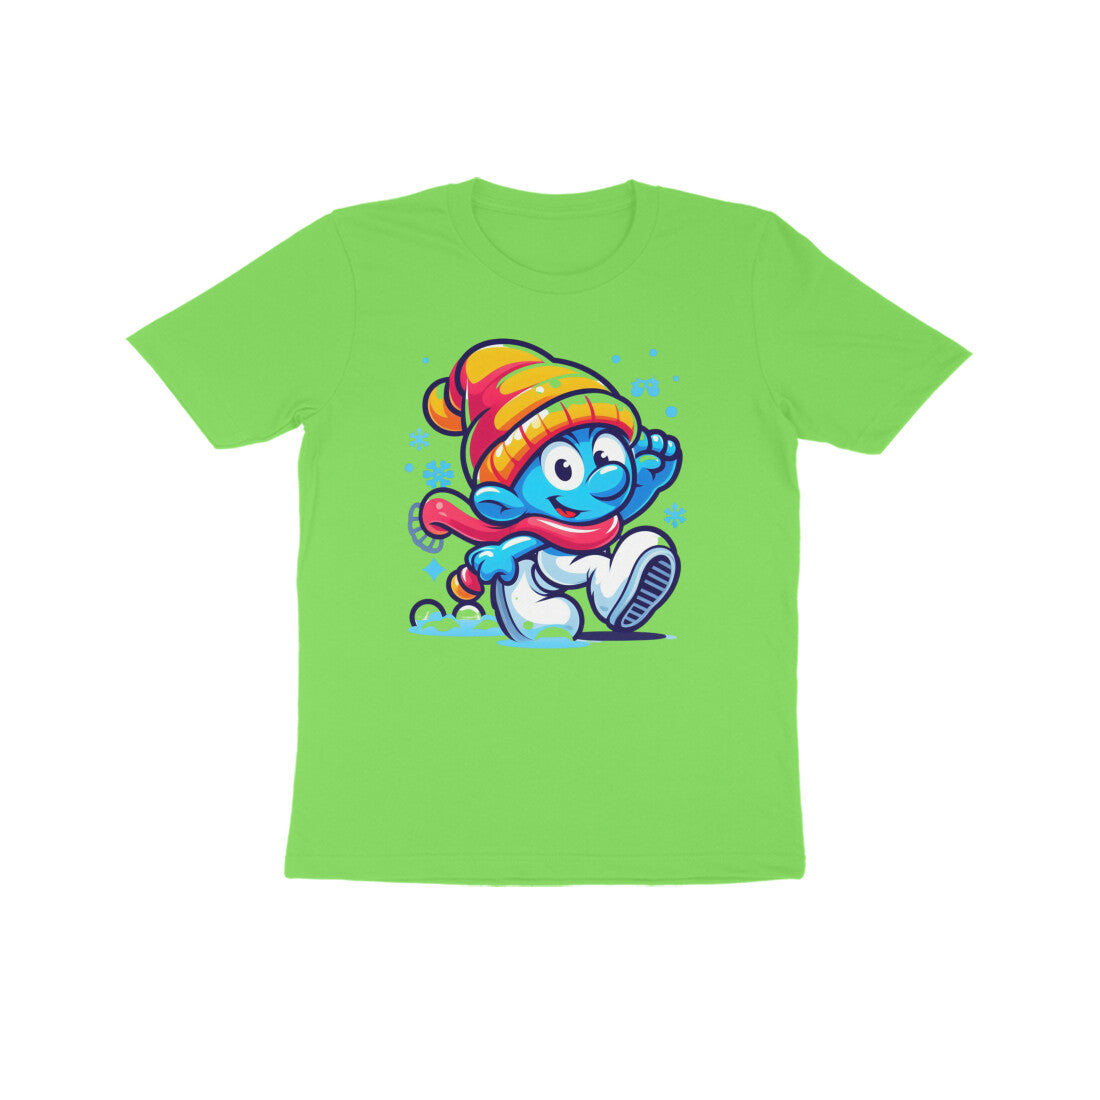 Festive Fun: Kid's Smurf Christmas T-Shirt